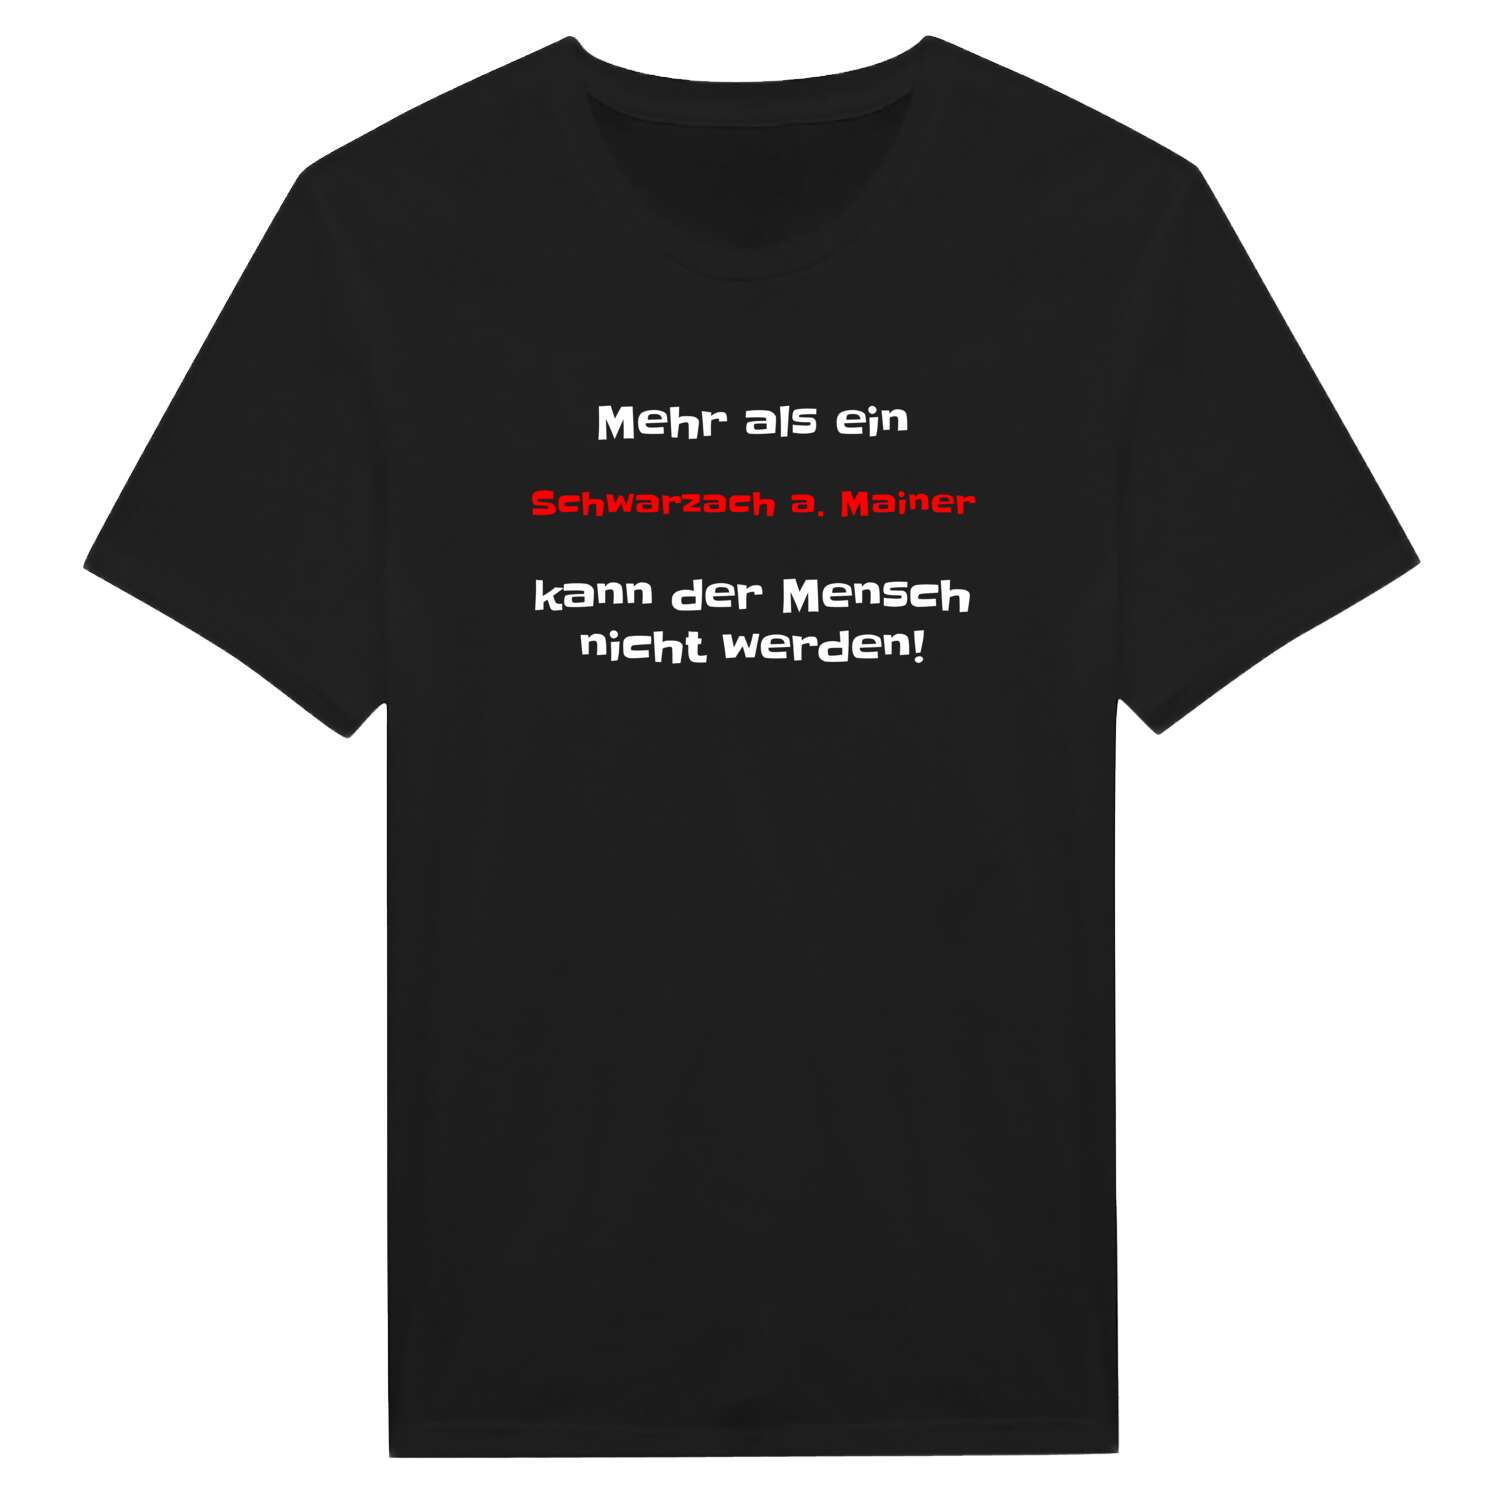 Schwarzach a. Main T-Shirt »Mehr als ein«